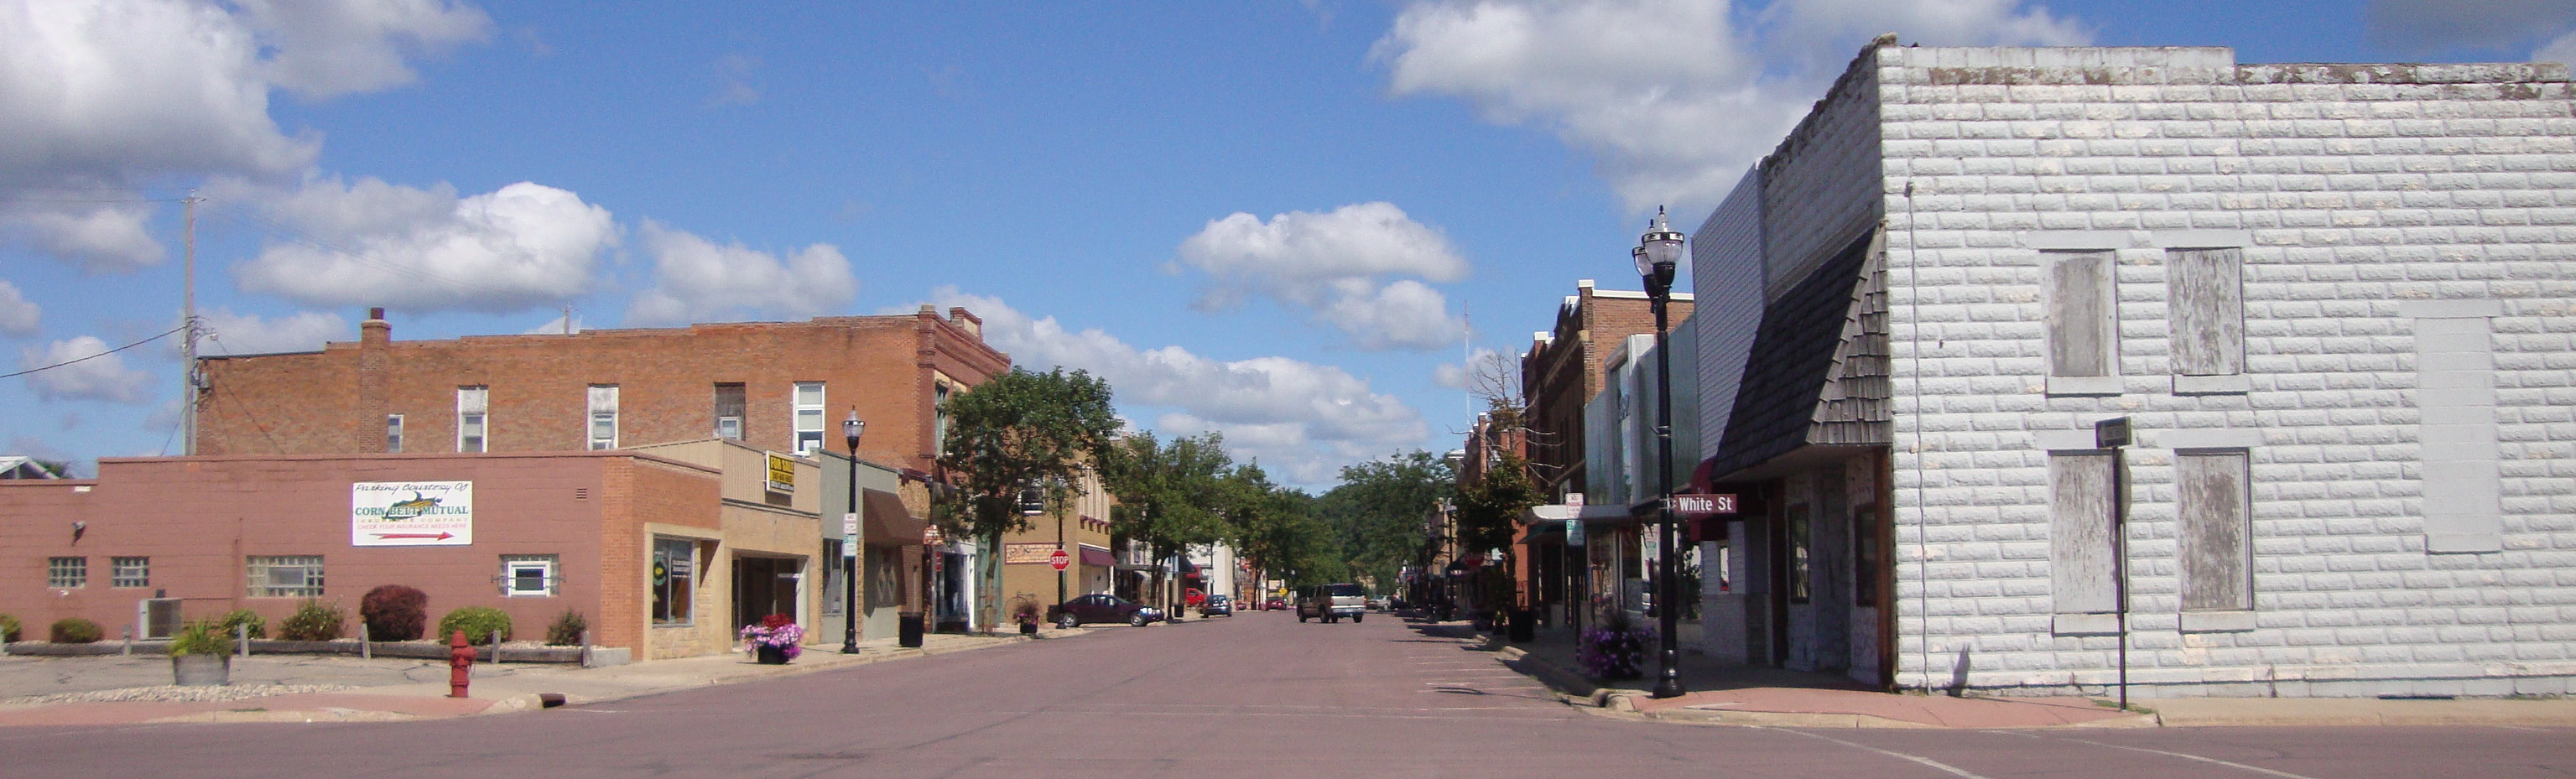 Downtown Jackson, Minnesota | Jackson, Minnesota is located … | Flickr